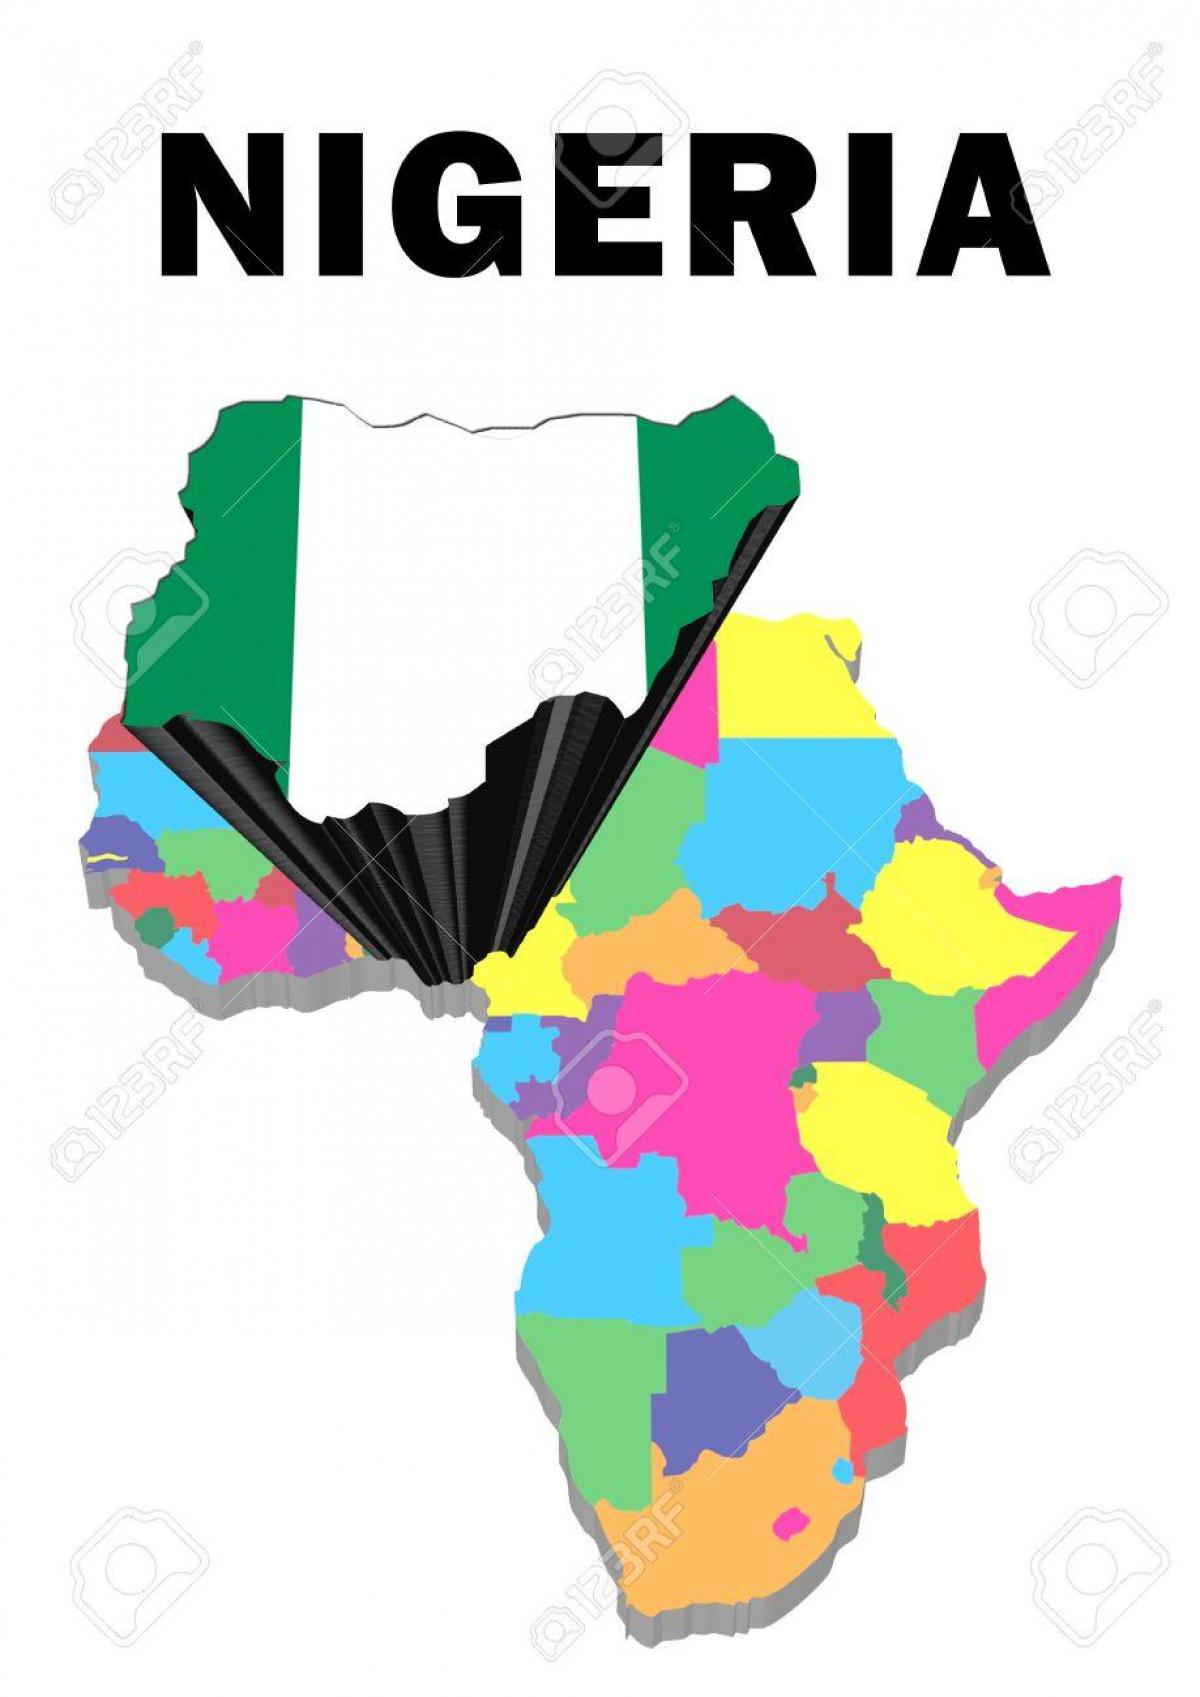 نقشه آفریقا با نیجریه برجسته